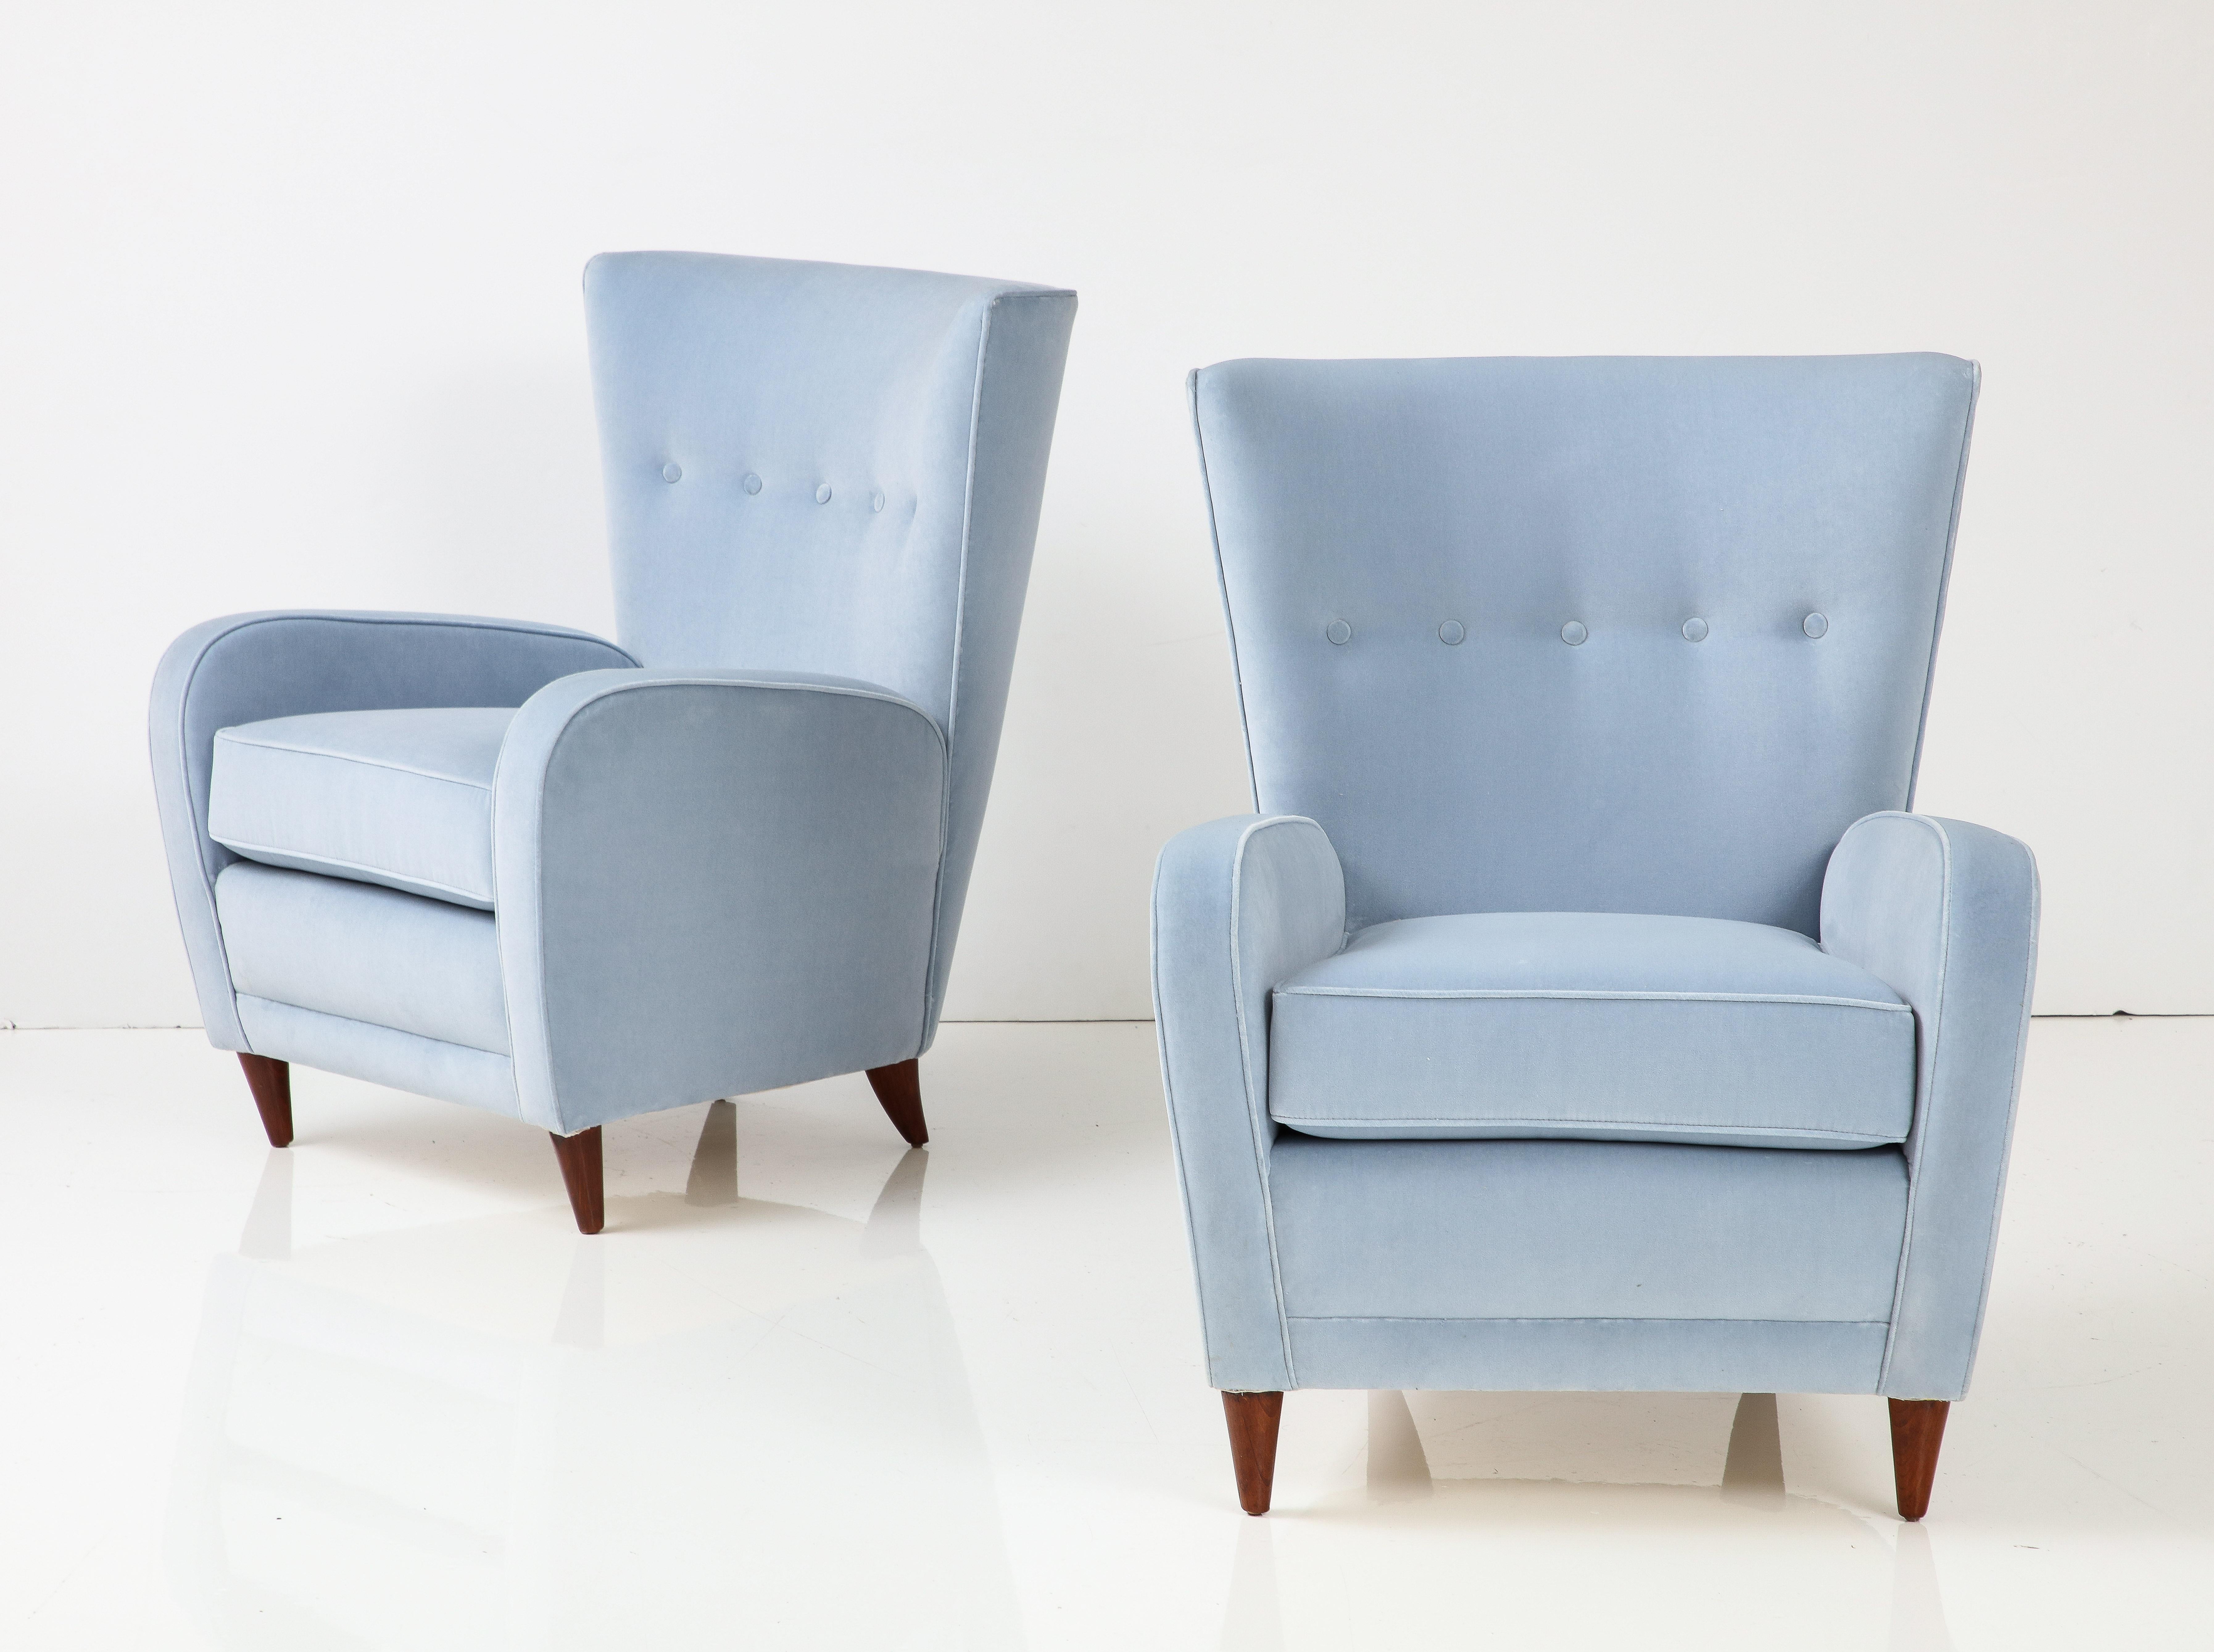 Paolo Buffa Paar Loungesessel oder Sessel mit geschwungener Rückenlehne und Knöpfen, Sitzkissen, abgerundeten Armlehnen und elegant verjüngten Beinen, Italien, 1950er Jahre. Diese unglaublich schicken Loungesessel oder modernistischen Ohrensessel